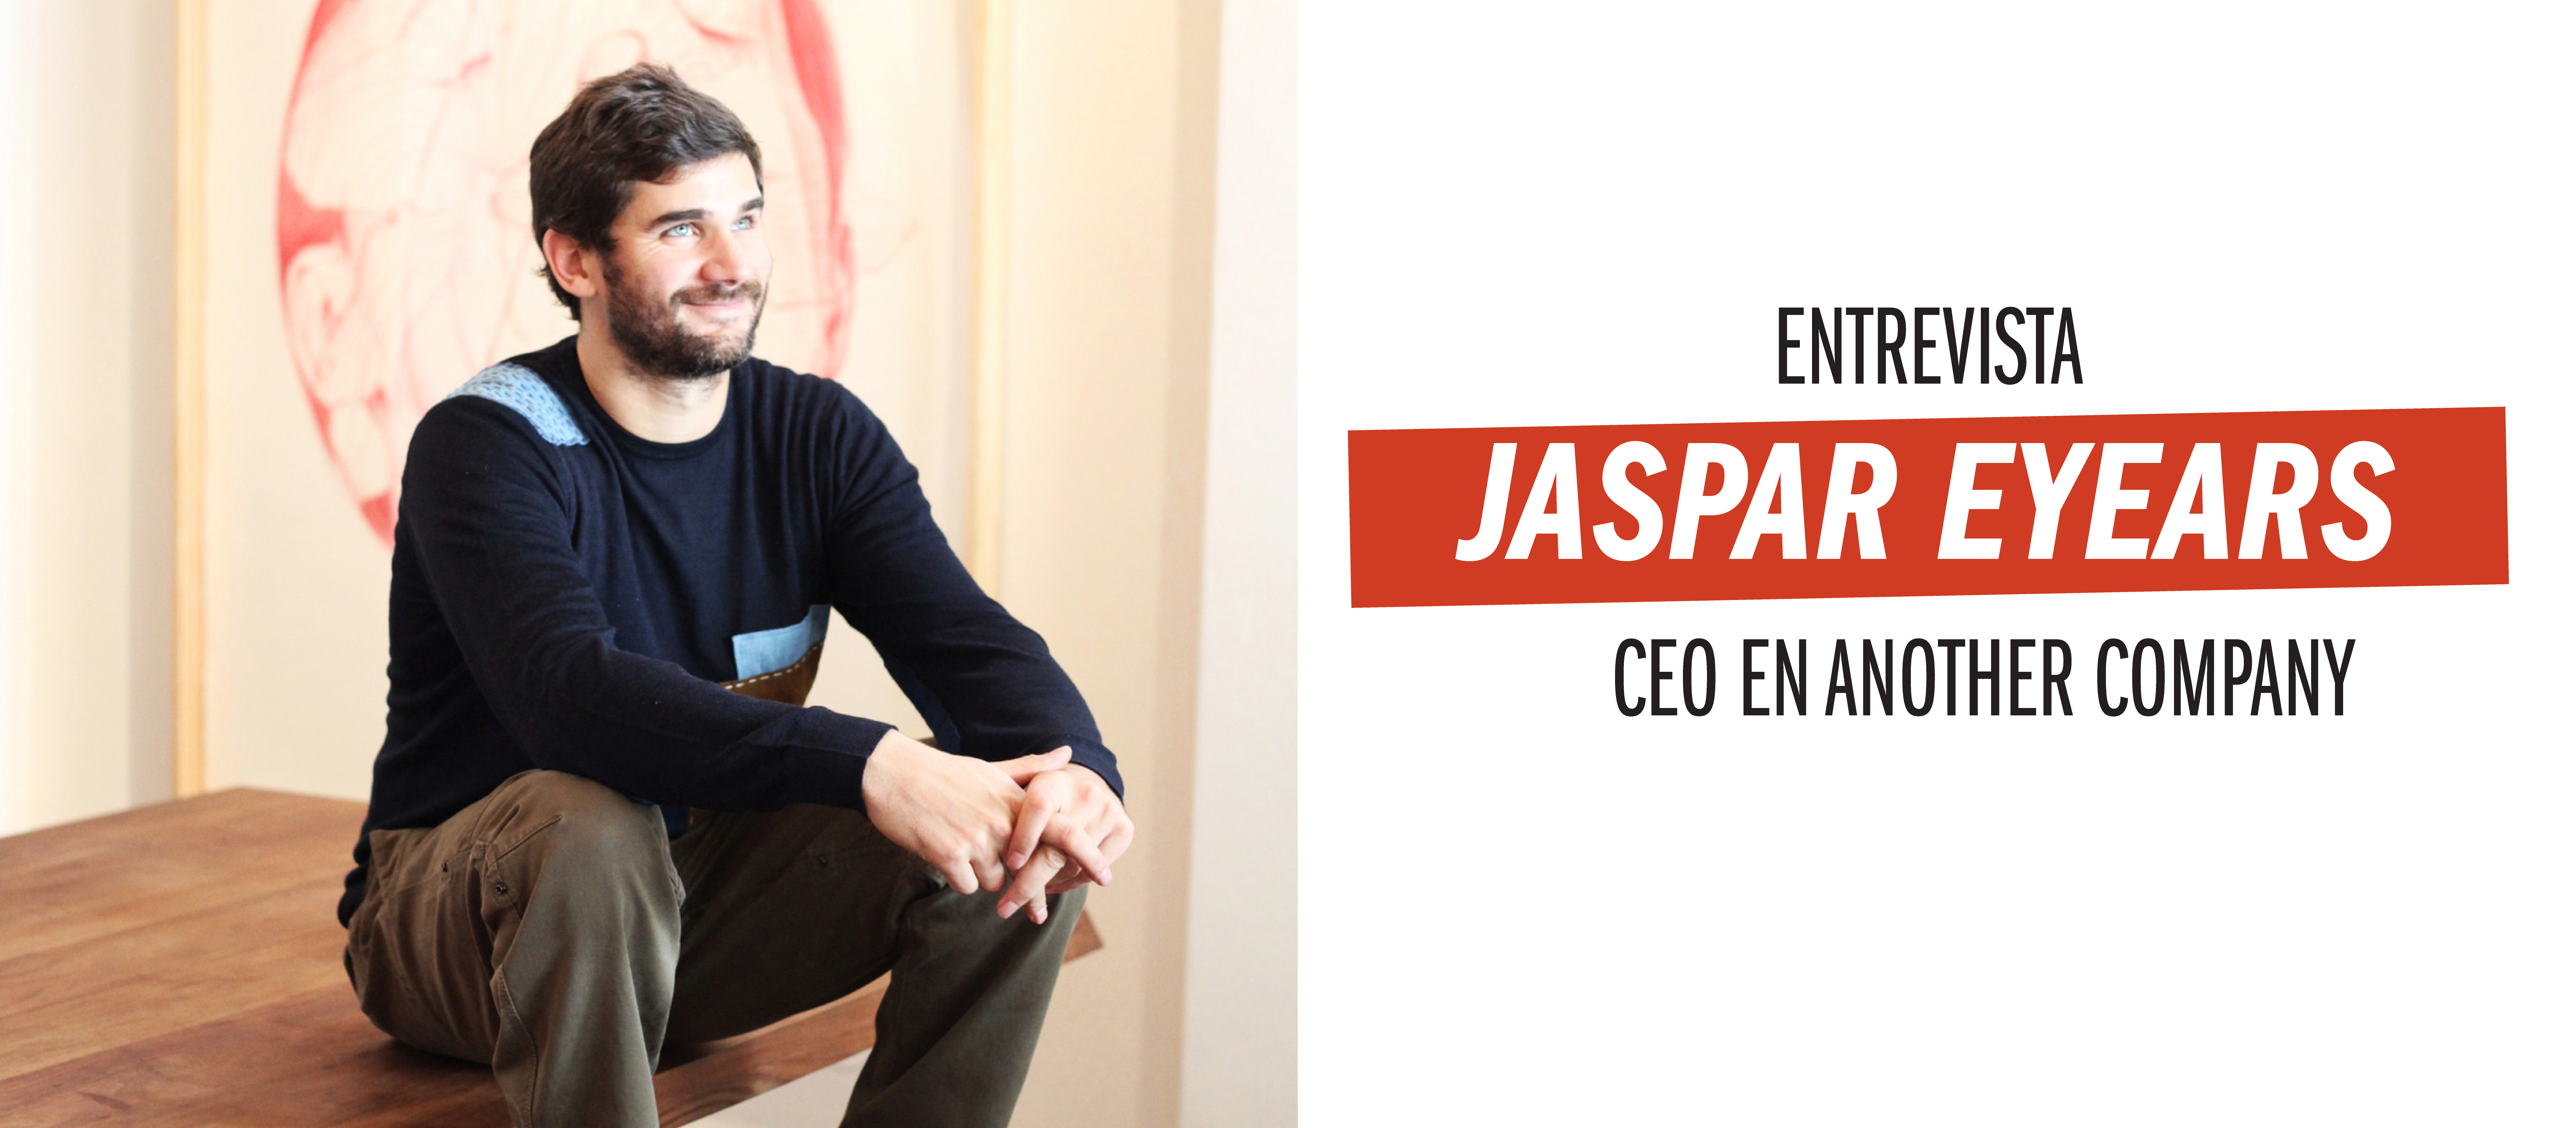 Entrevista con Jaspar Eyears, CEO de Another Company